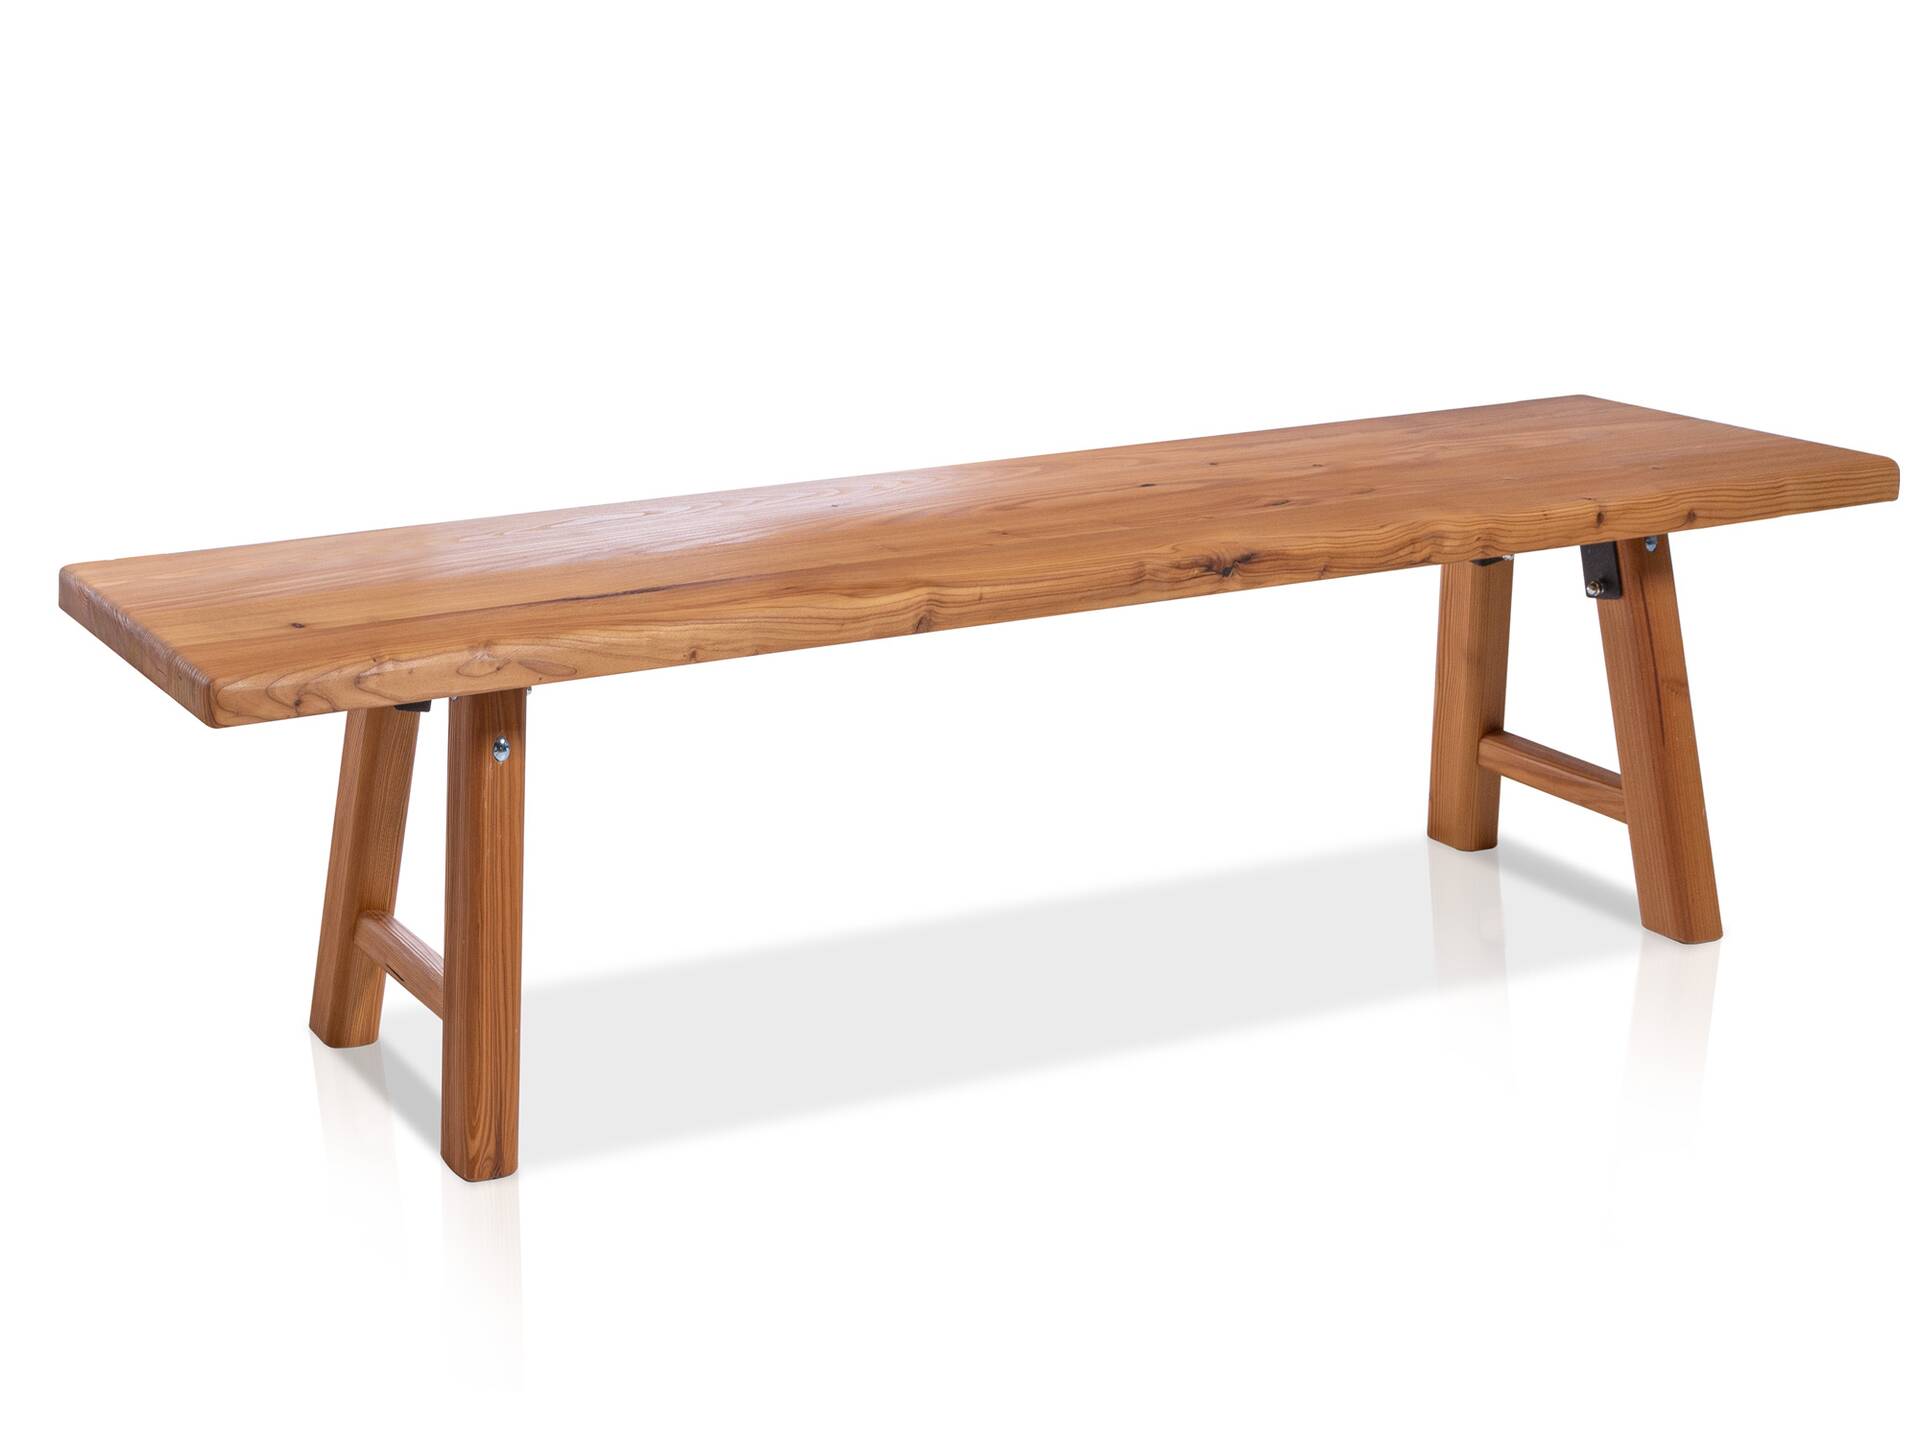 STARNBERG Sitzbank ohne Rücken, Material Massivholz, Lärche gedämpft 160 cm | geölt